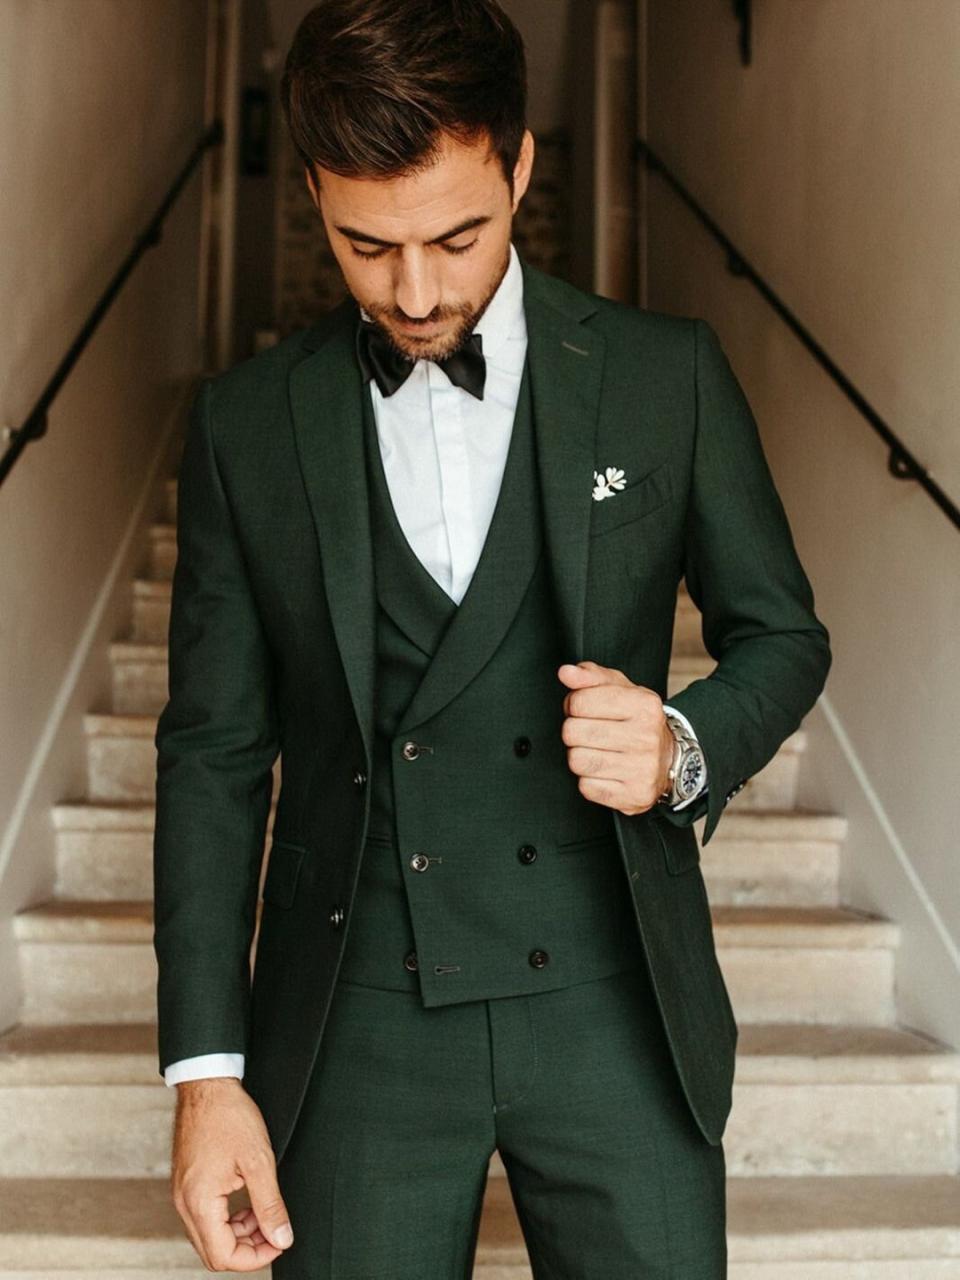 Men Suit Dark Green Wedding Suit Groom Wear Suit 3 Piece Suit - Etsy